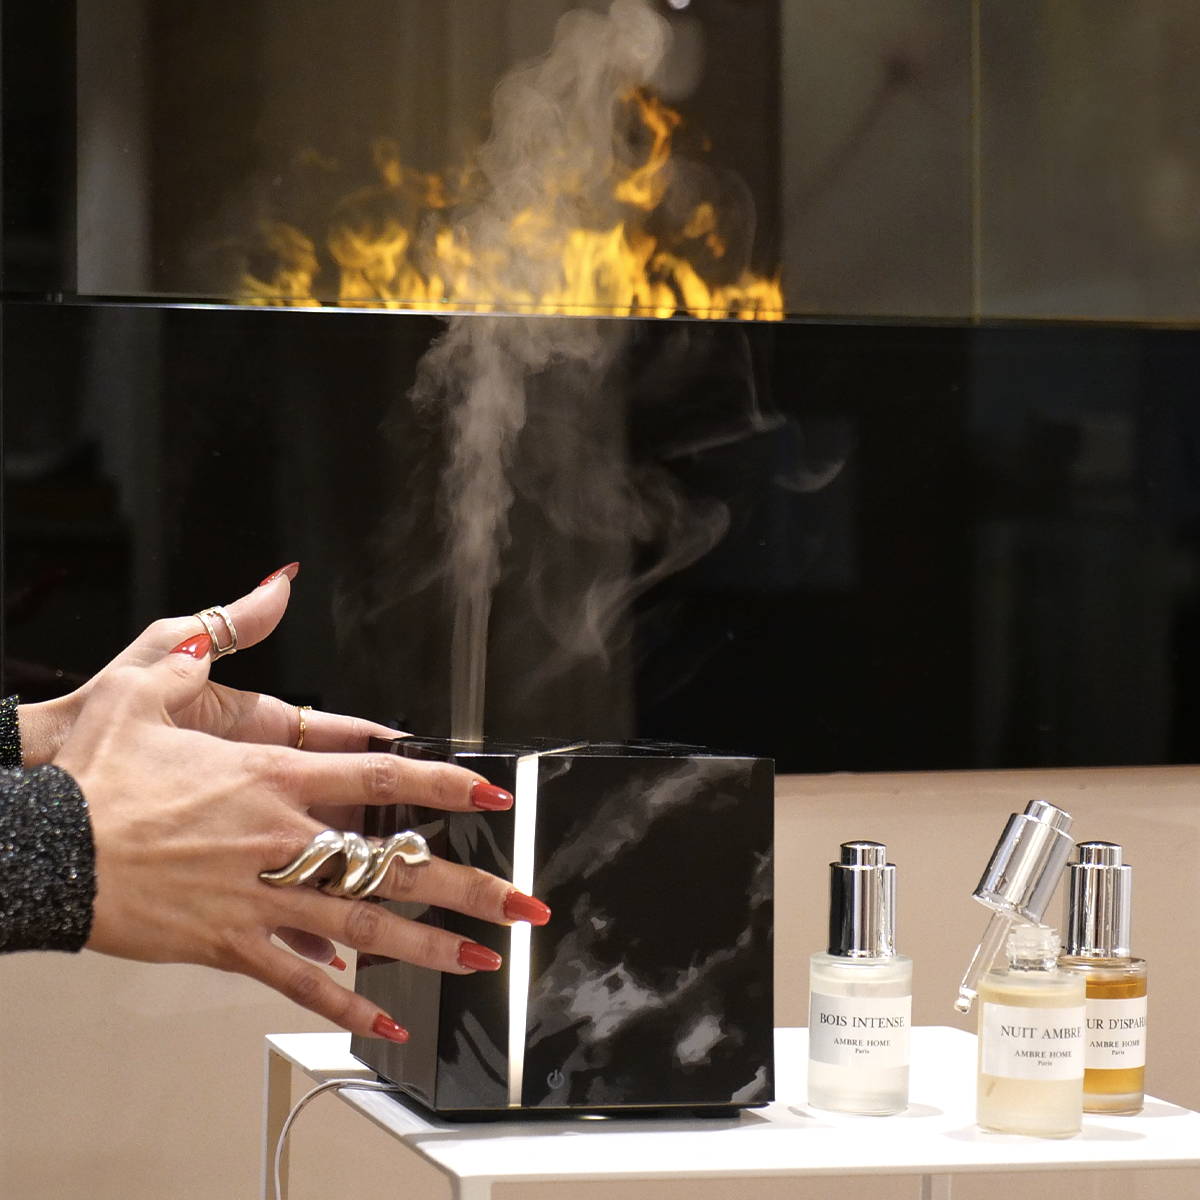 femme locataire le diffuseur marbre noir diffusant du parfum face à une cheminée